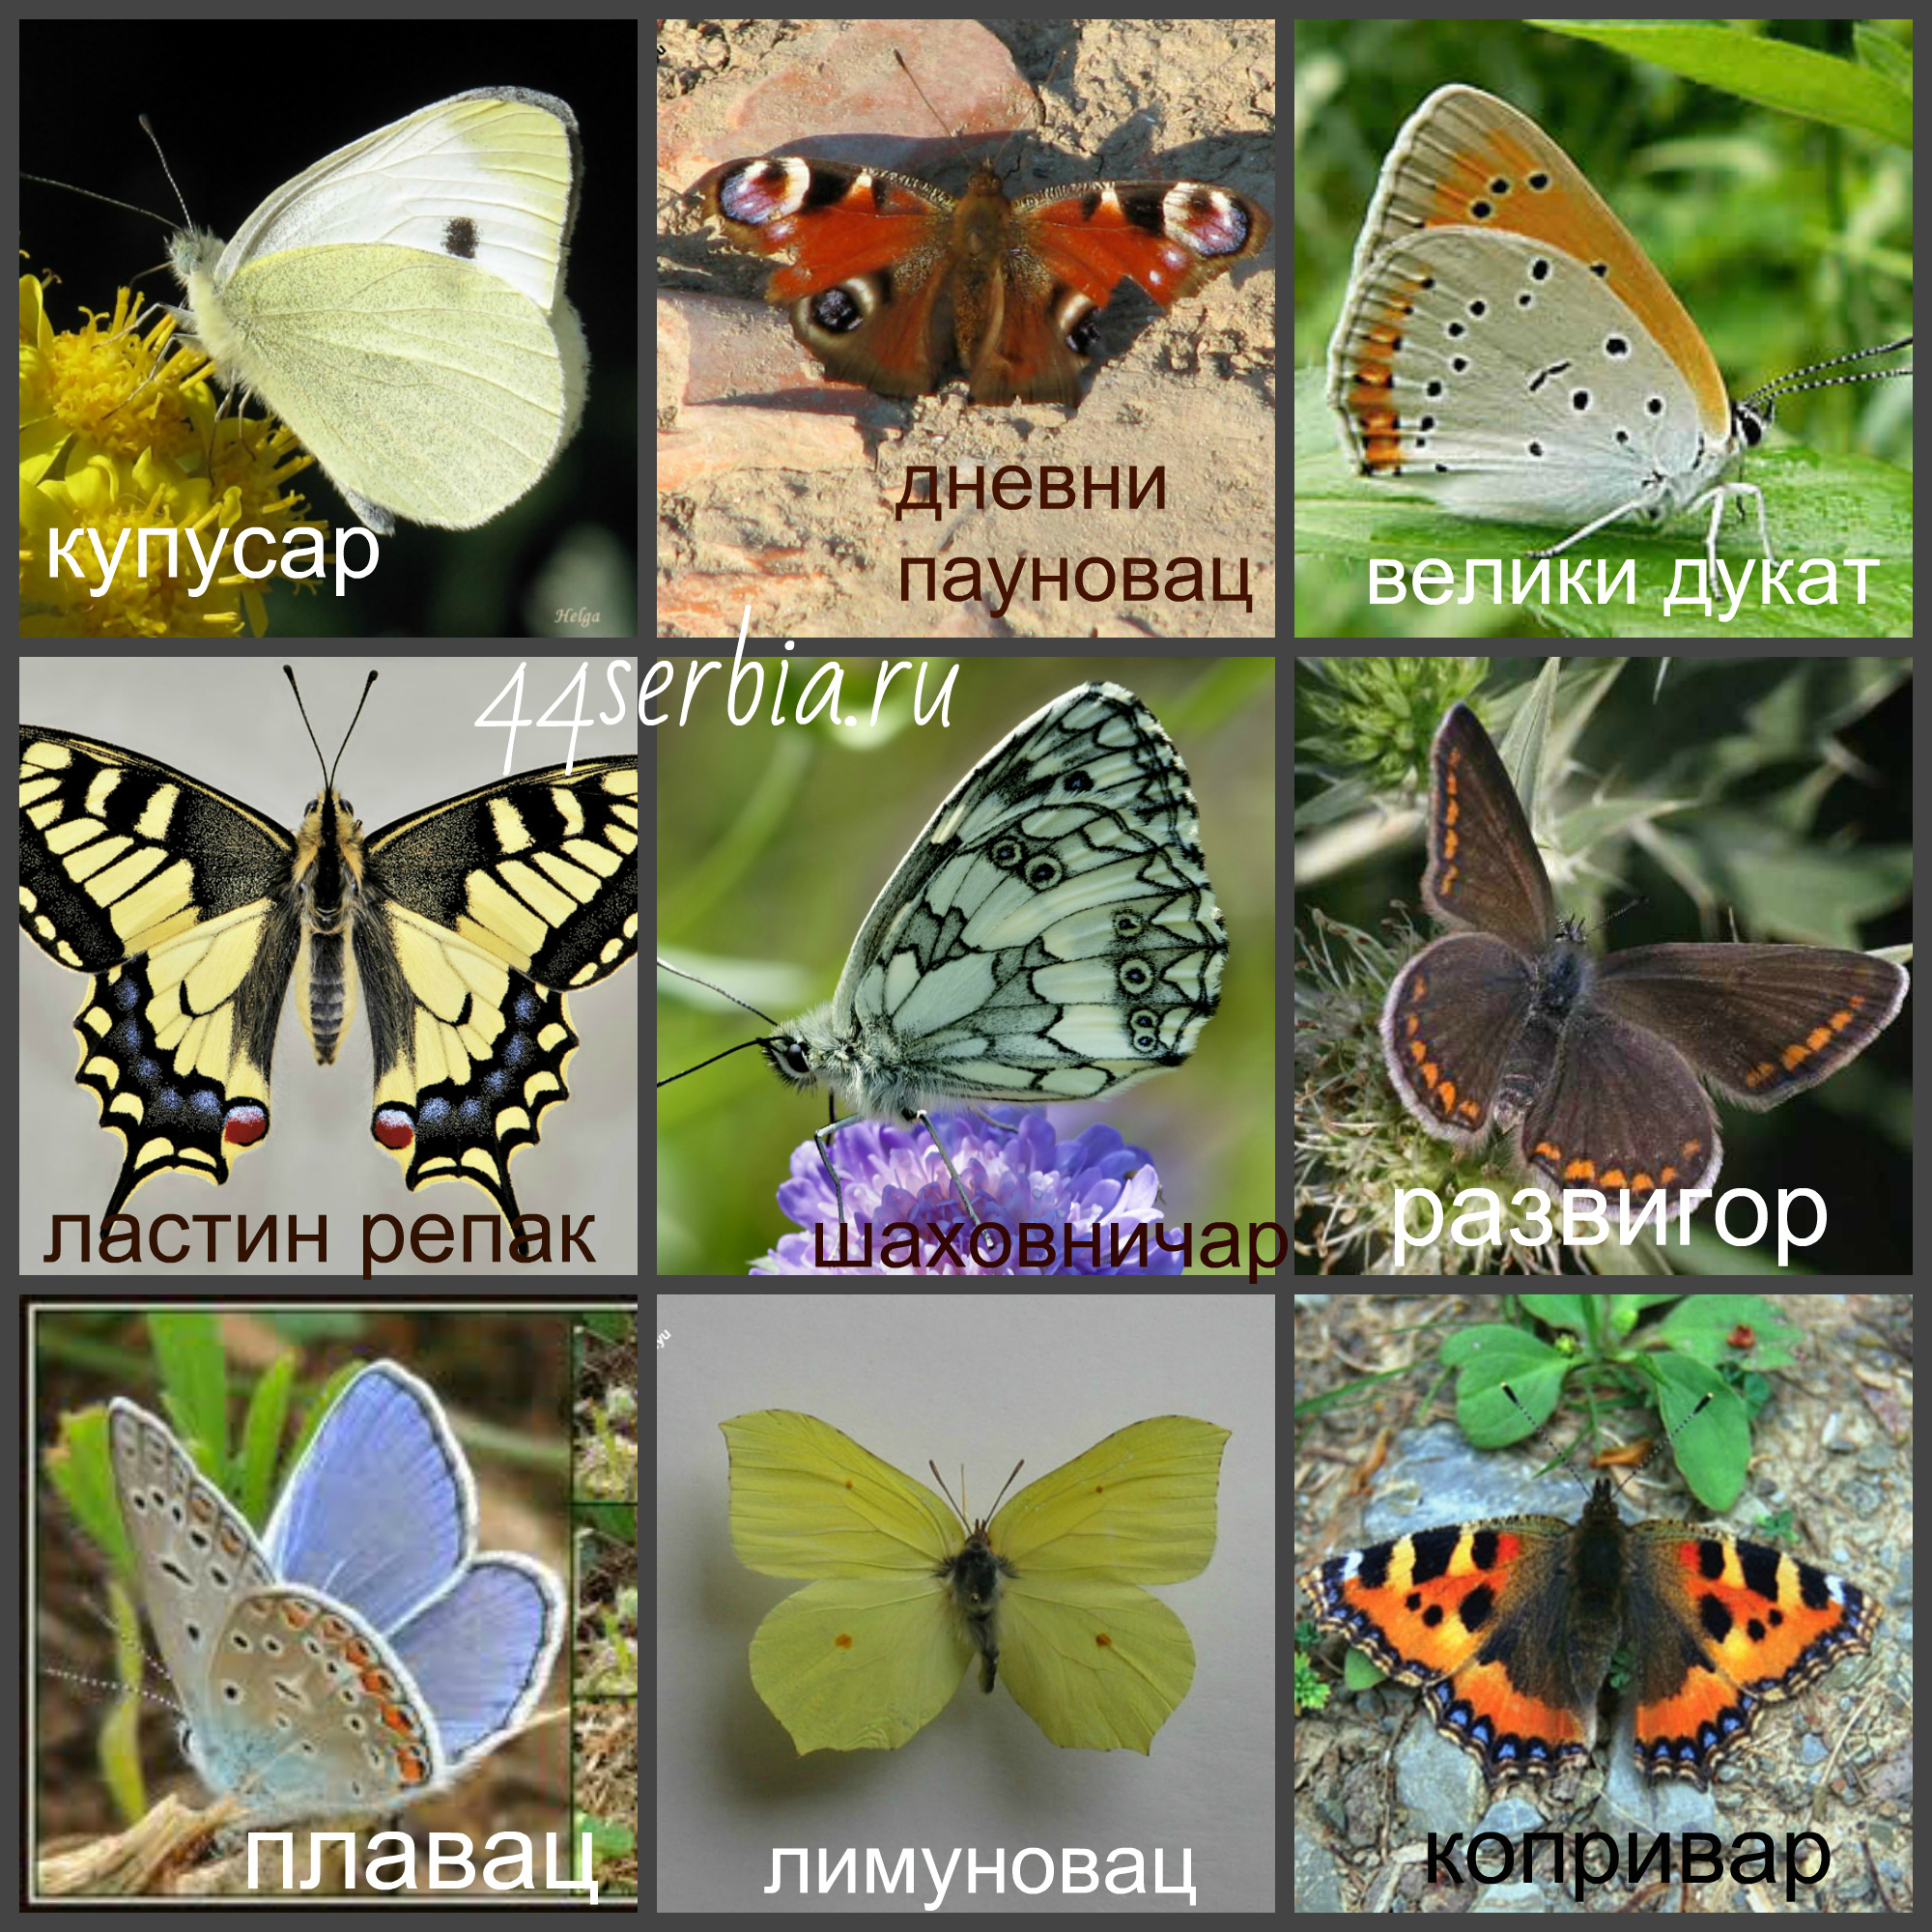 Бабочки относятся к группе. Виды бабочек. Название разных бабочек. Виды бабочек с названиями. Расцветки бабочек.